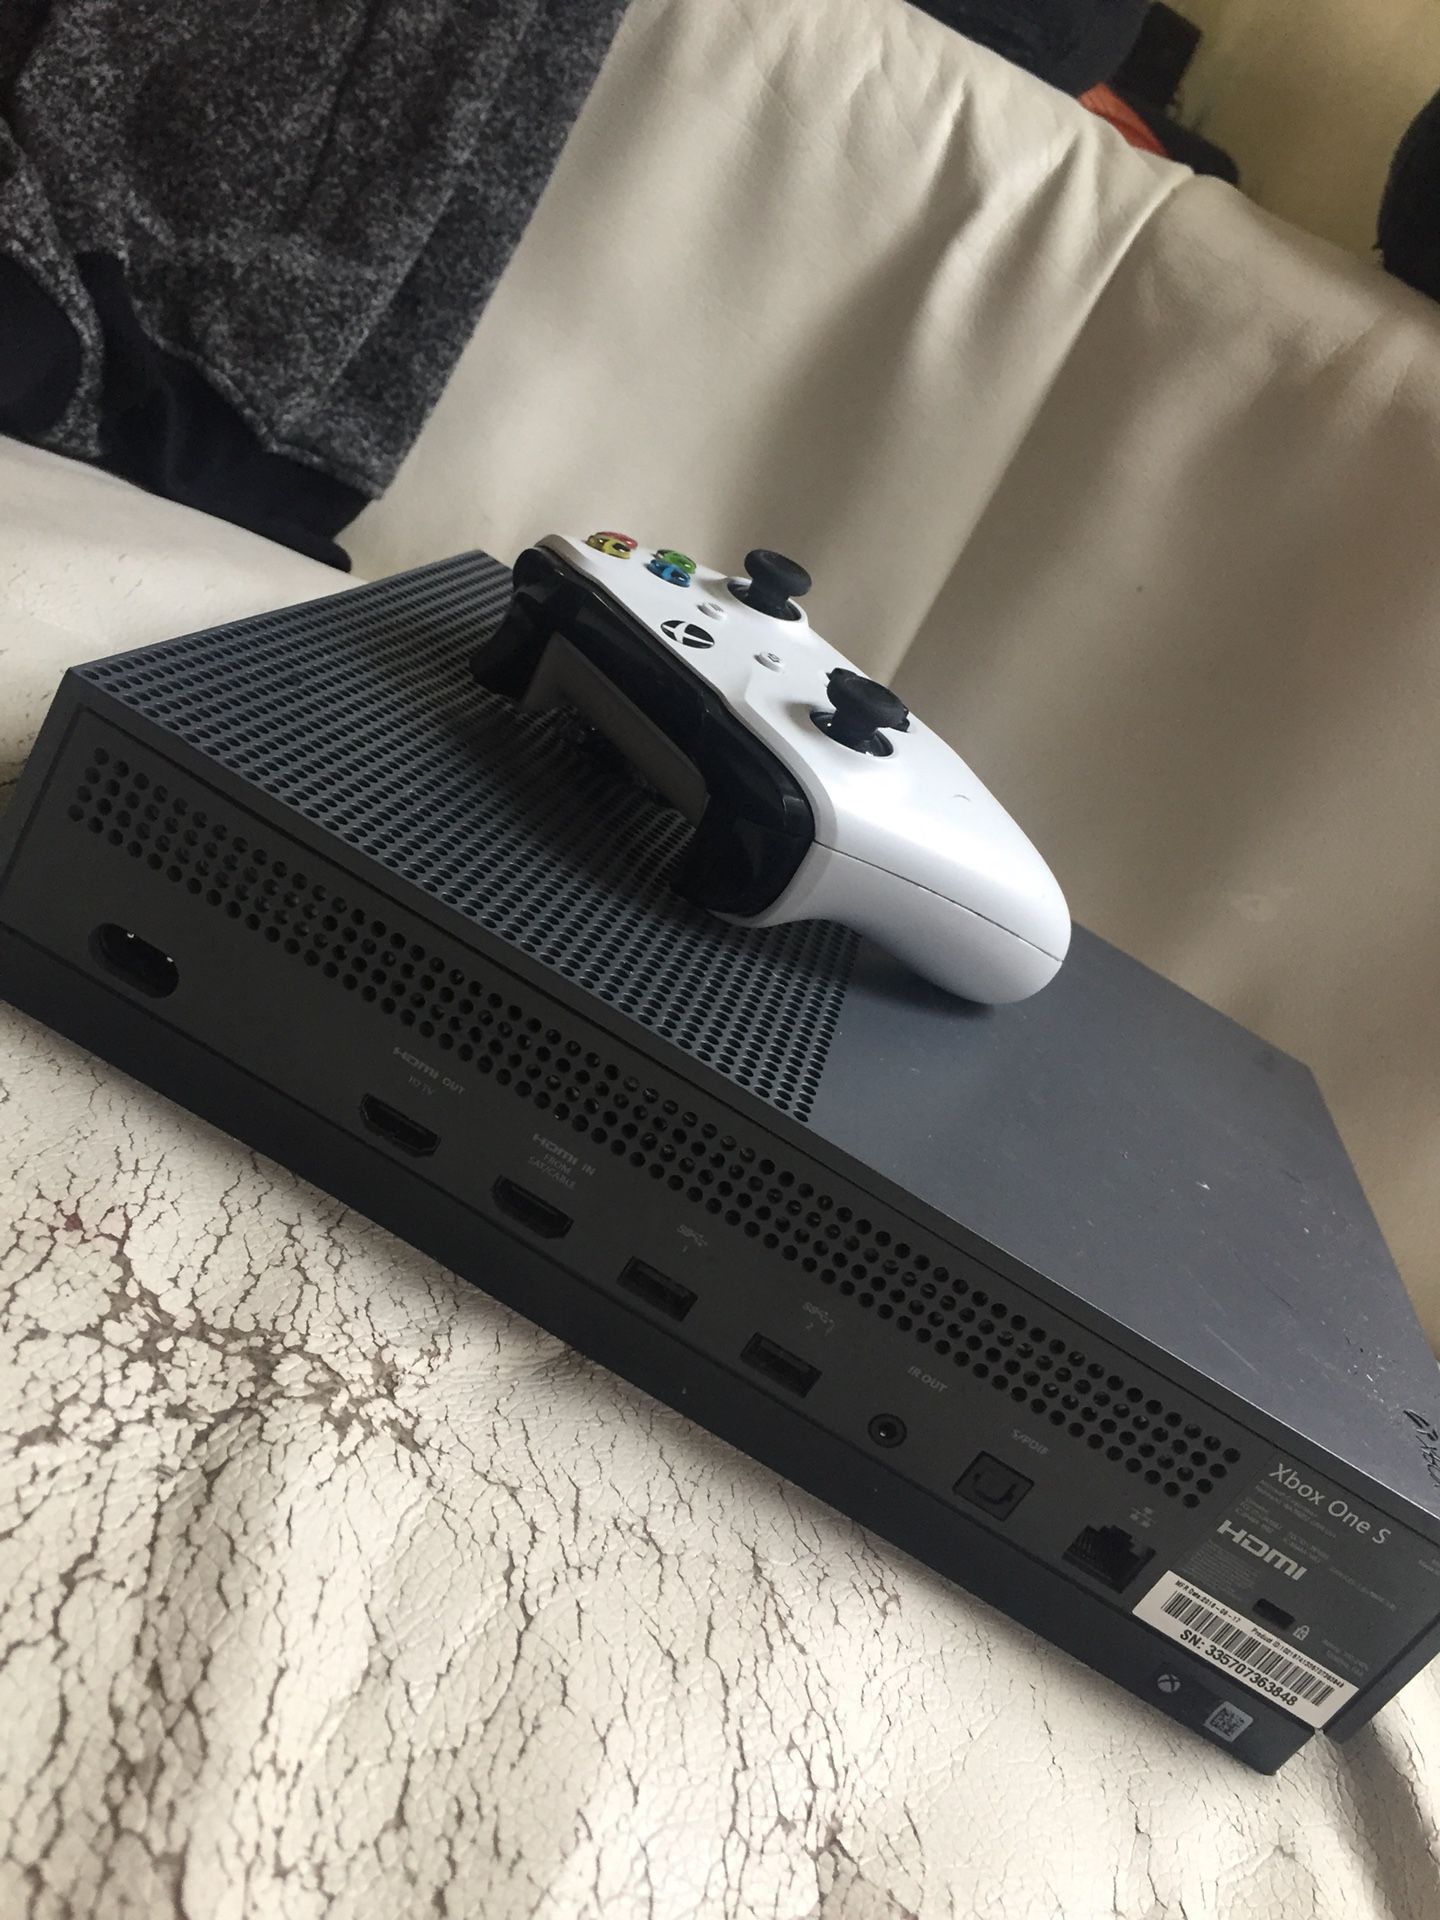 Used Xbox One S